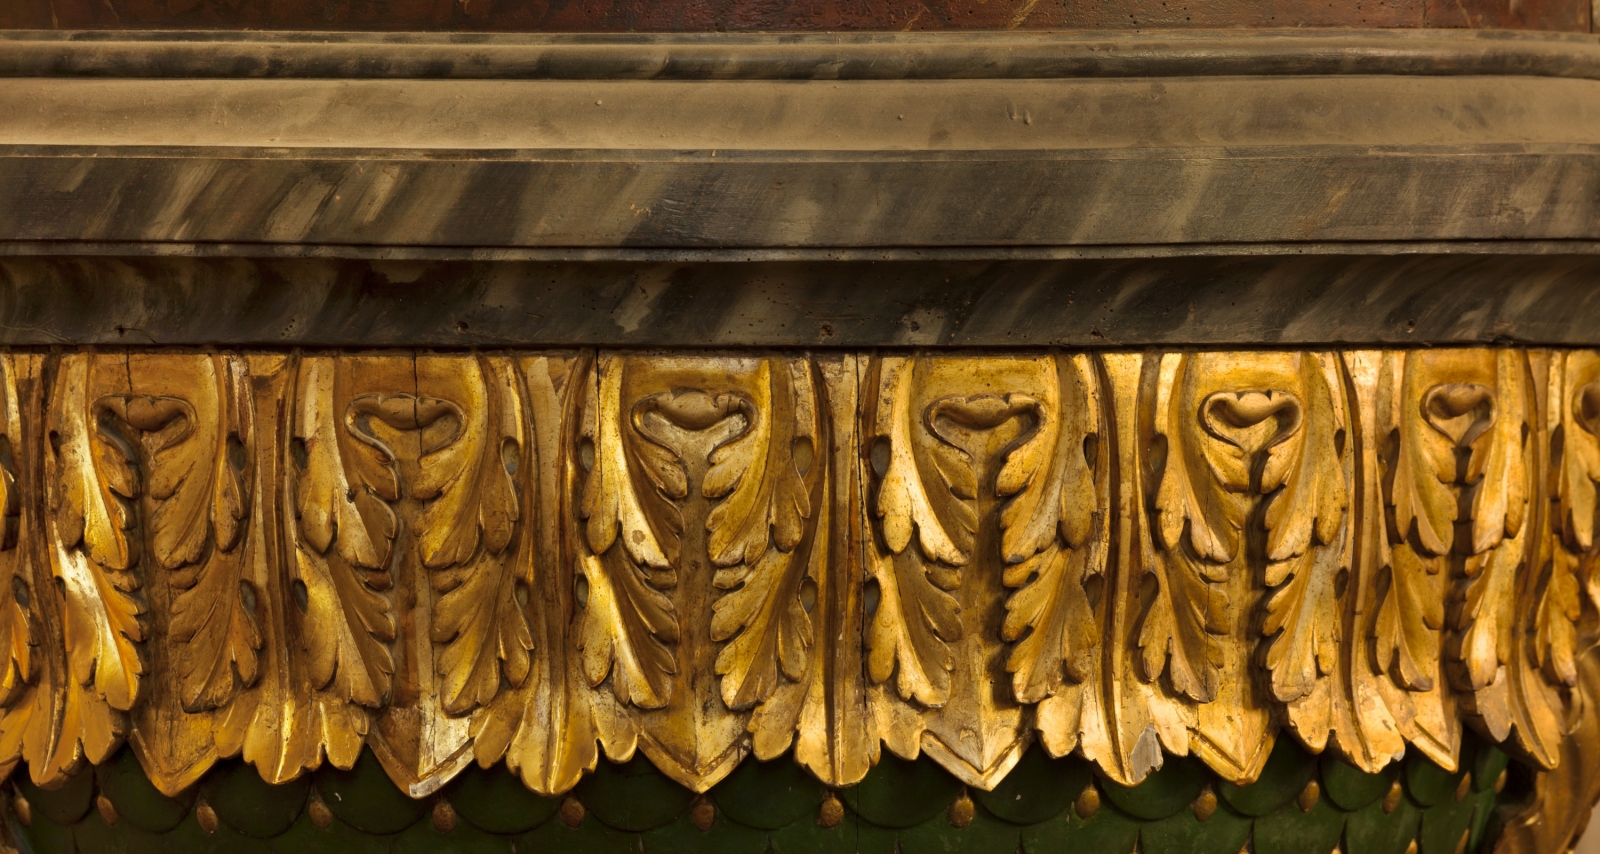 Гуси деревянные декор с позолотой. Trim texture. Закат золотит деревья старинной позолотой